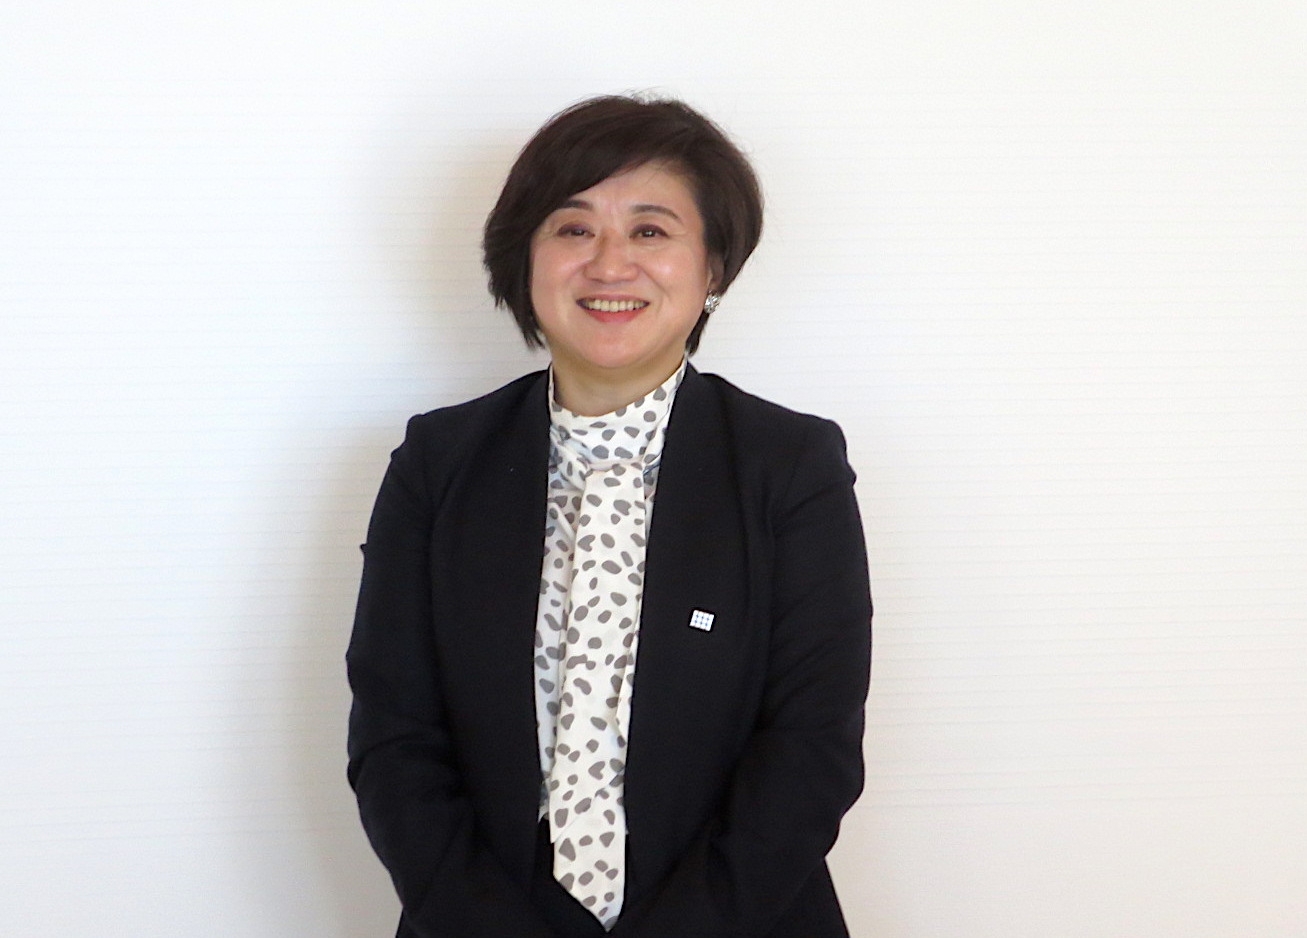 ポーラ・及川美紀新社長インタビュー「意思決定のスピード向上で成長へ」